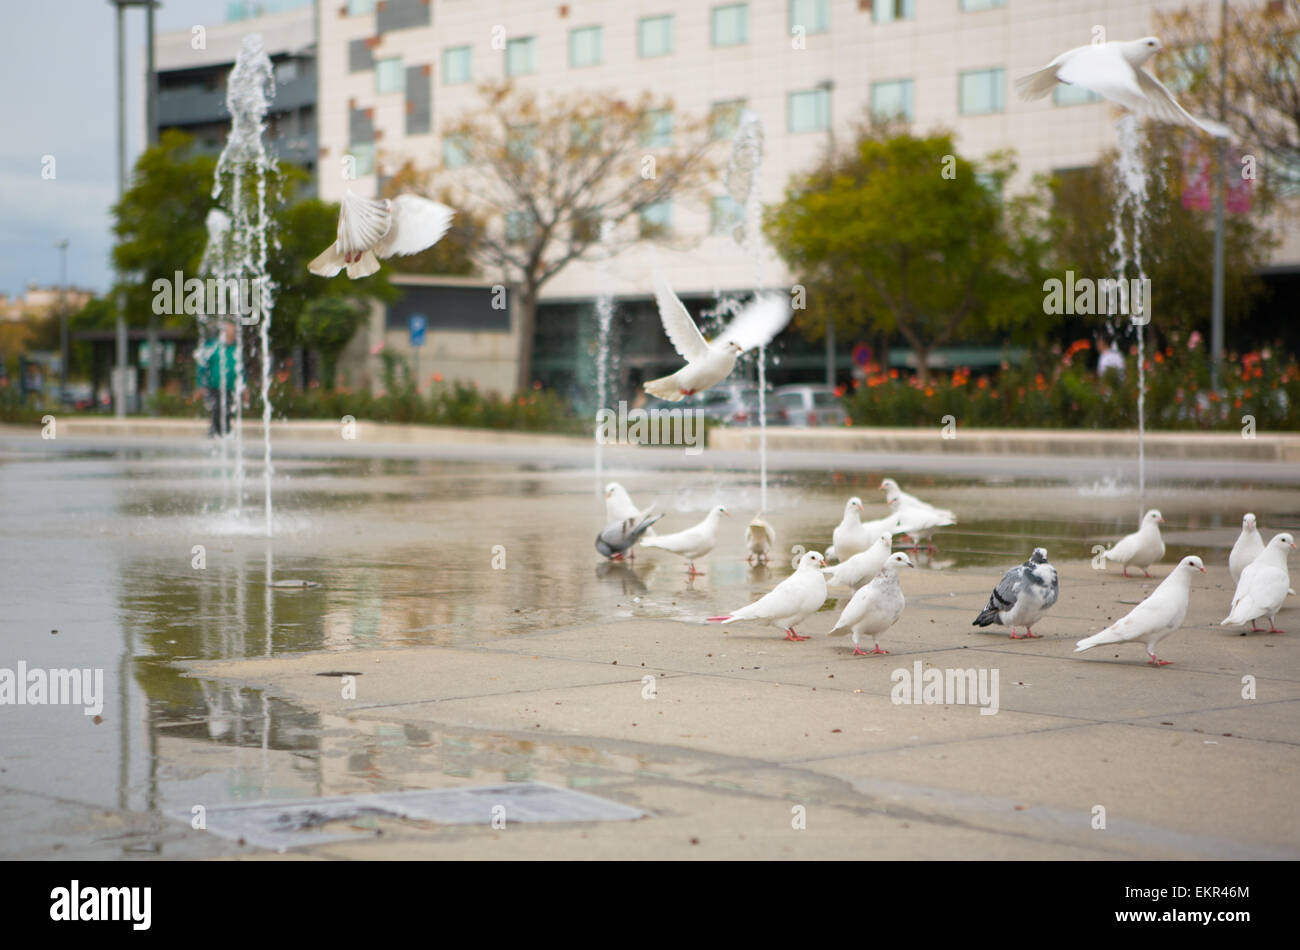 Des jets d'eau de printemps colombes sur la ville de Cordoue, Espagne Banque D'Images